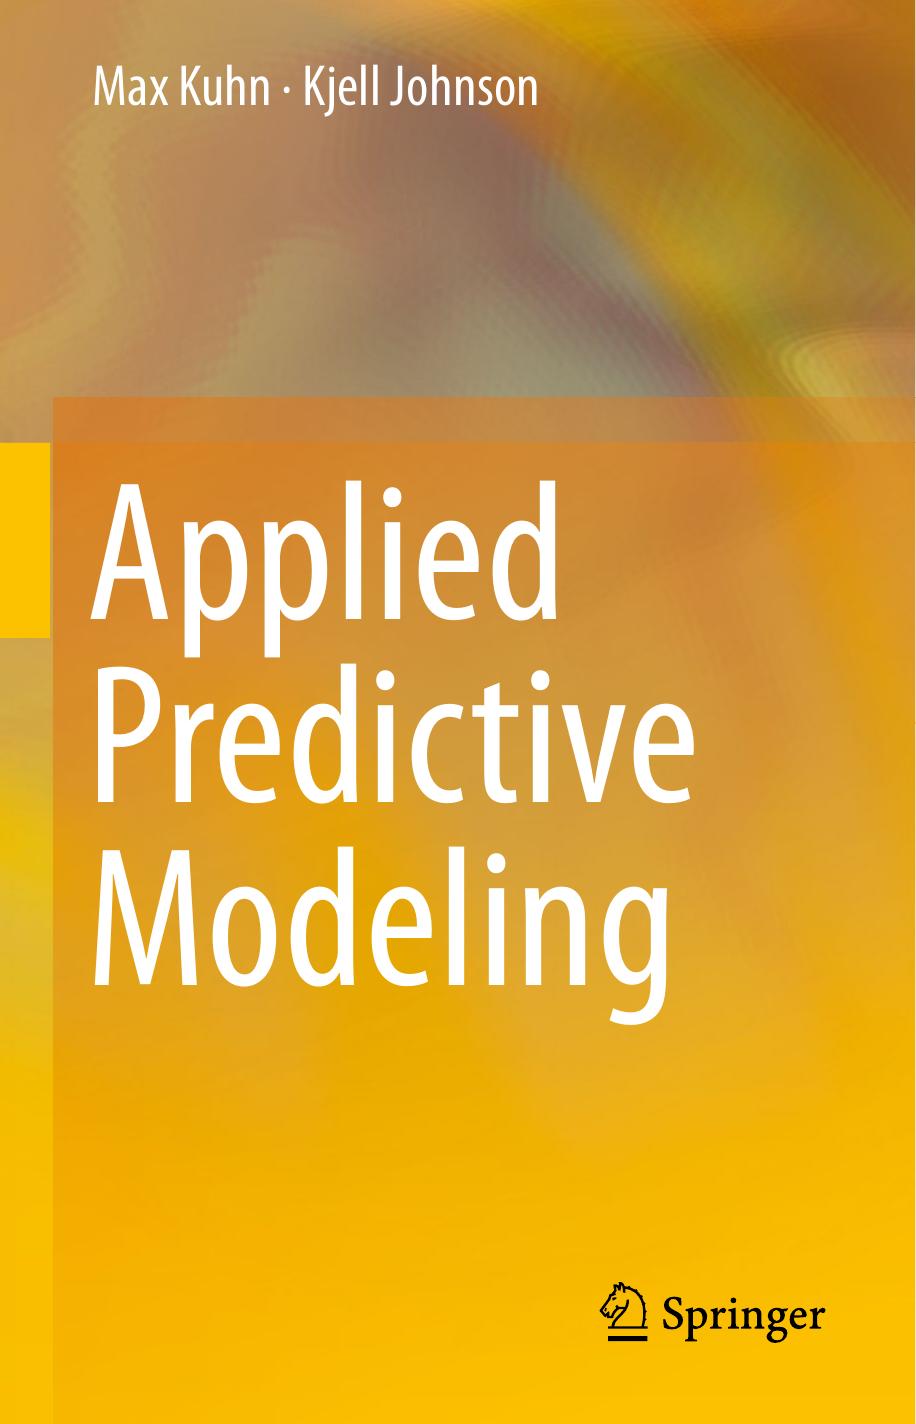 Applied Predictive Modeling by Max Kuhn & Kjell Johnson